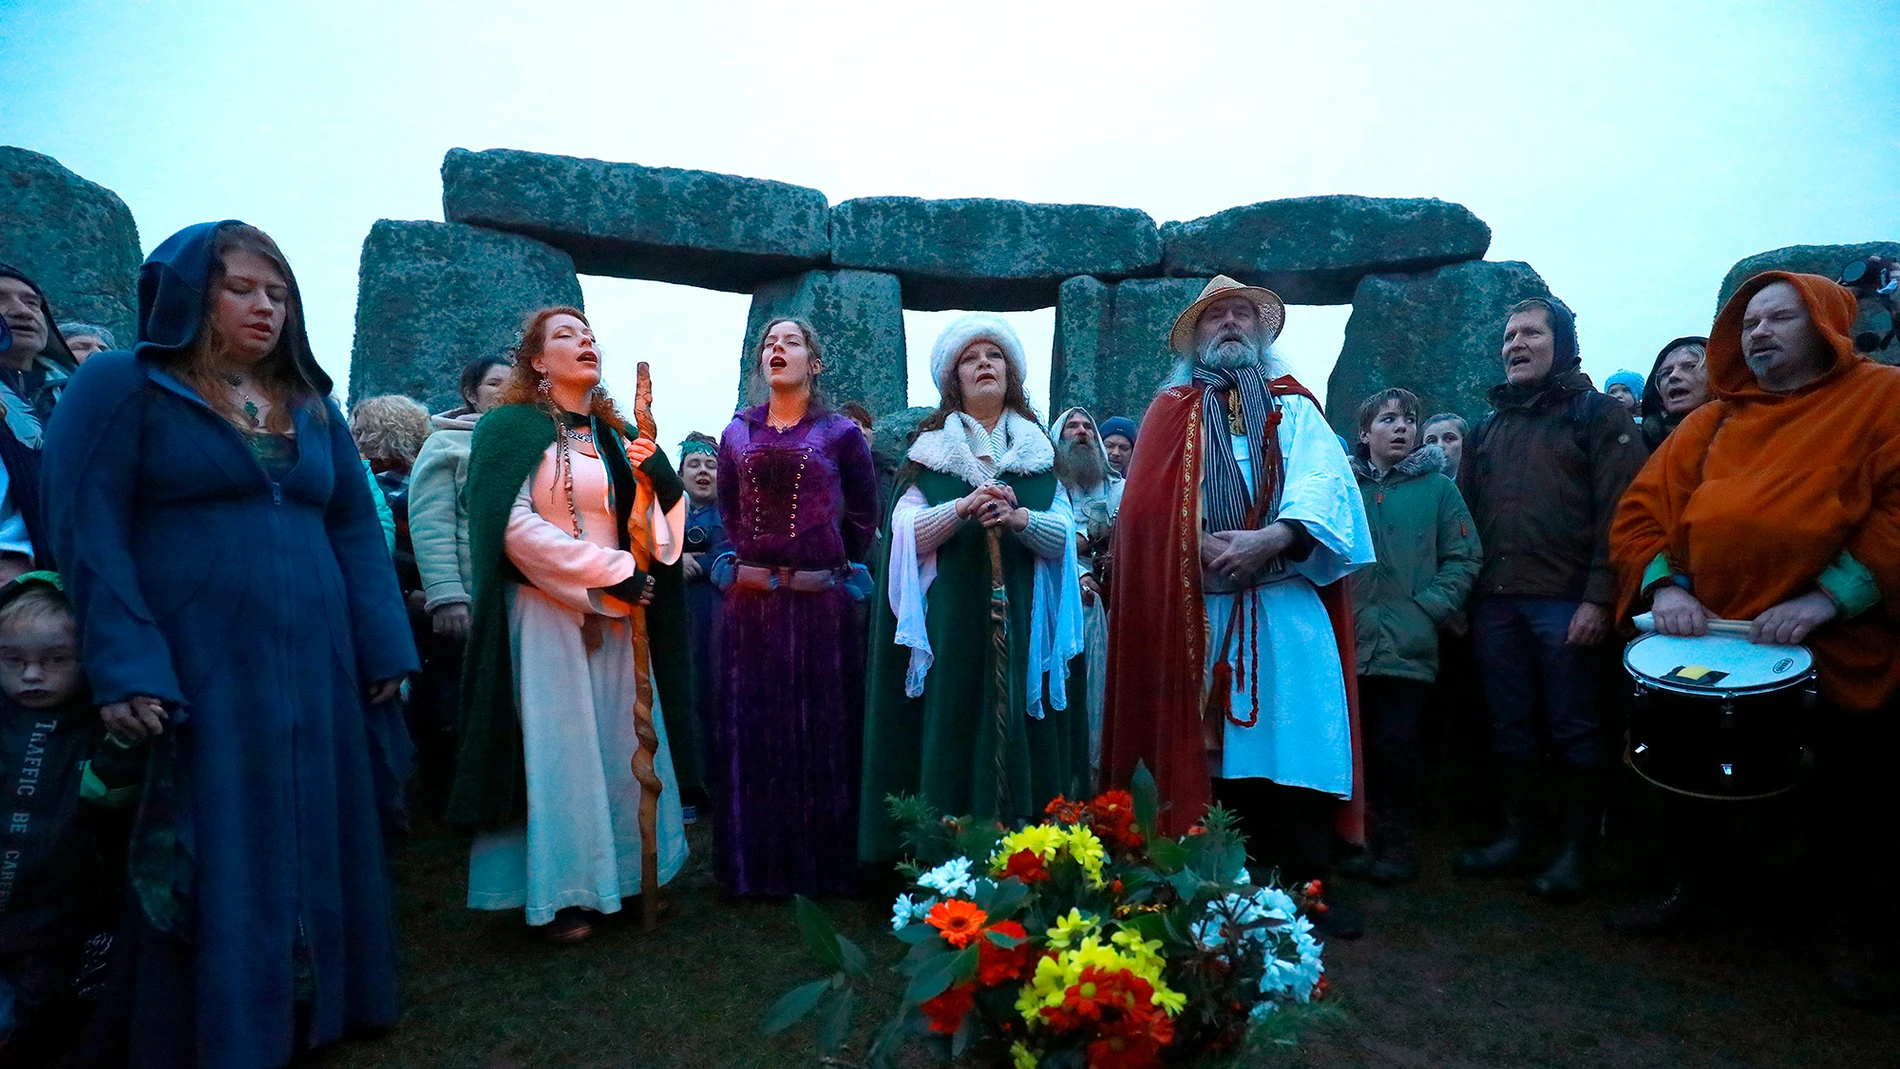 Una multitud participa en las celebraciones del solsticio de invierno en el monumento de Stonehenge